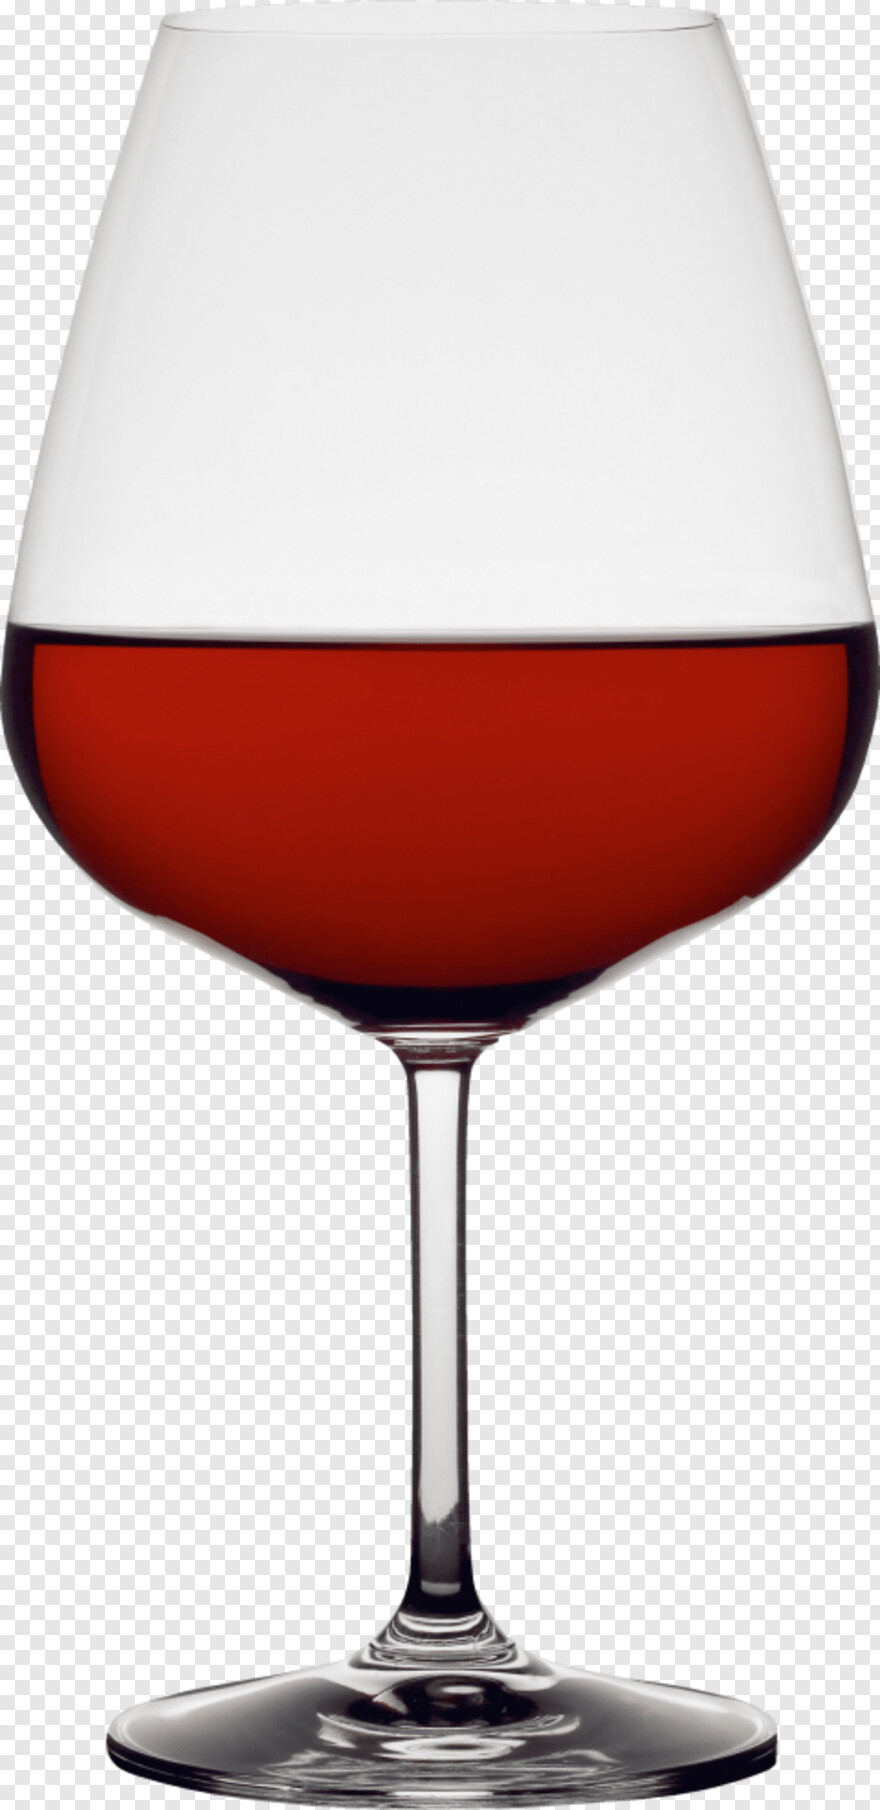 wine-glass # 795111